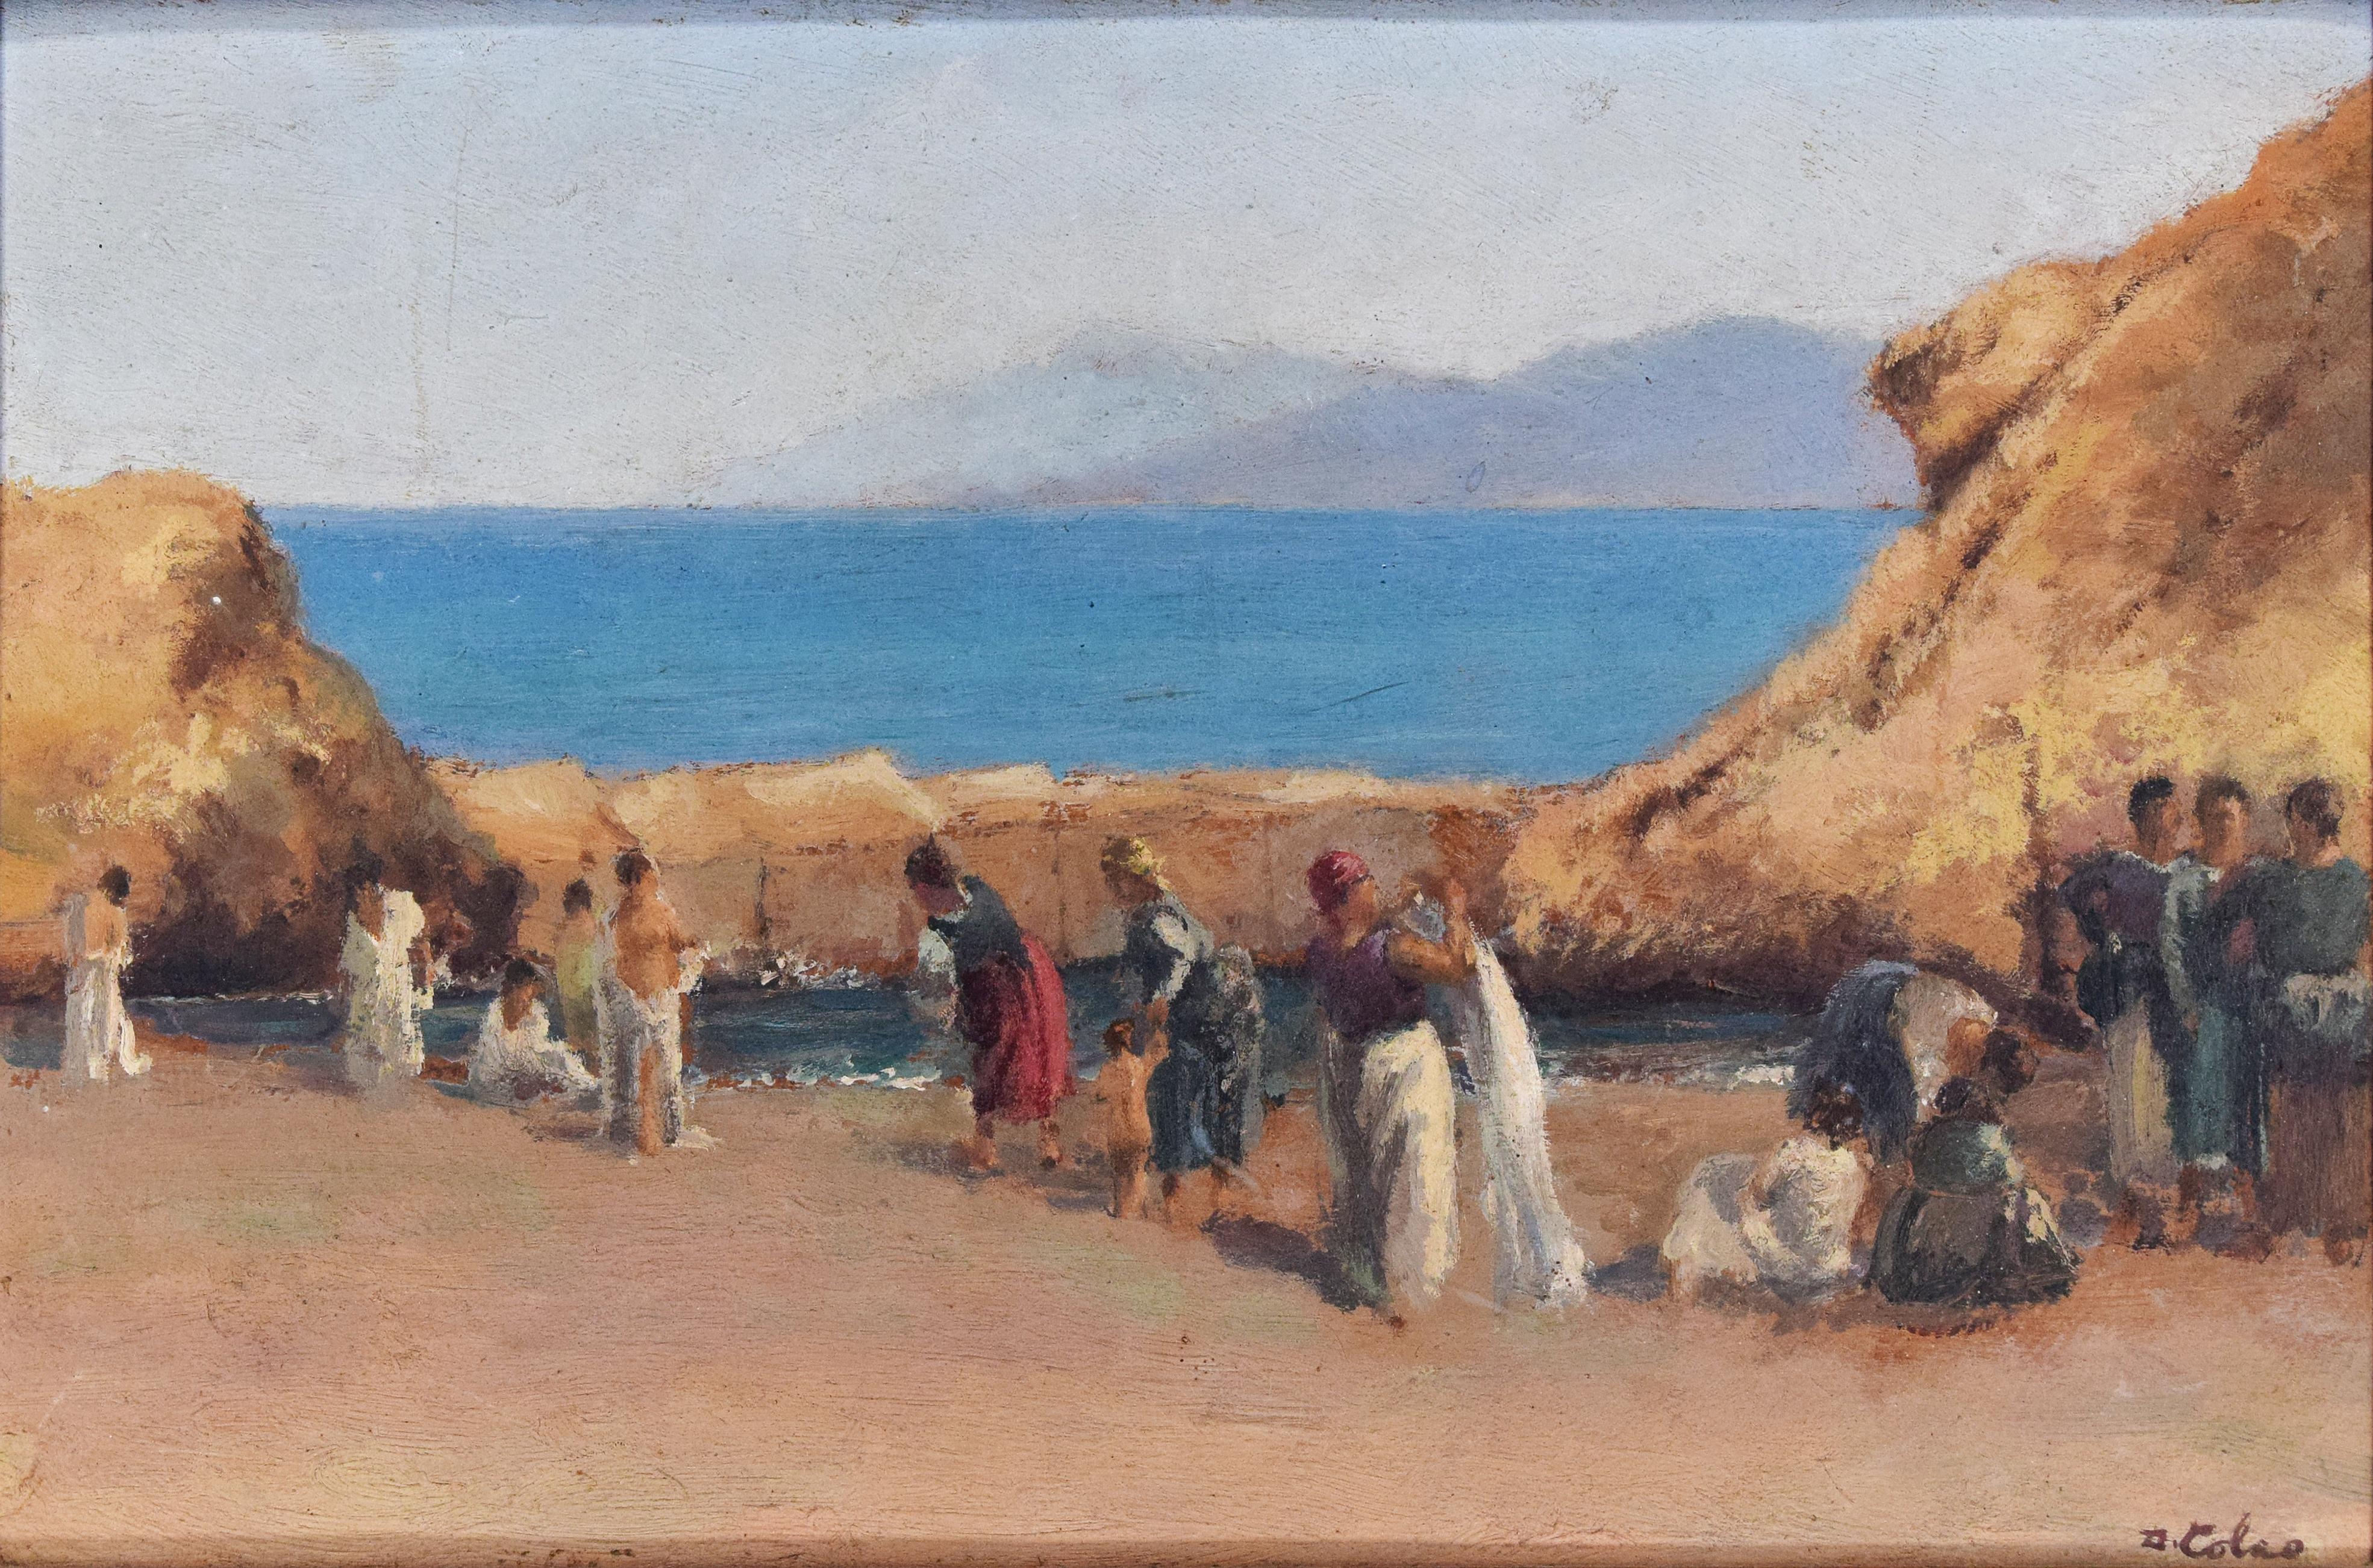 Femmes sur la plage dans une belle peinture à l'huile du début du XXe siècle, par l'artiste italien Domenico Colao (1881-1943).

Signé à la main à l'huile brune dans le coin inférieur droit.

Ce tableau original relaxant, à l'exception de quelques